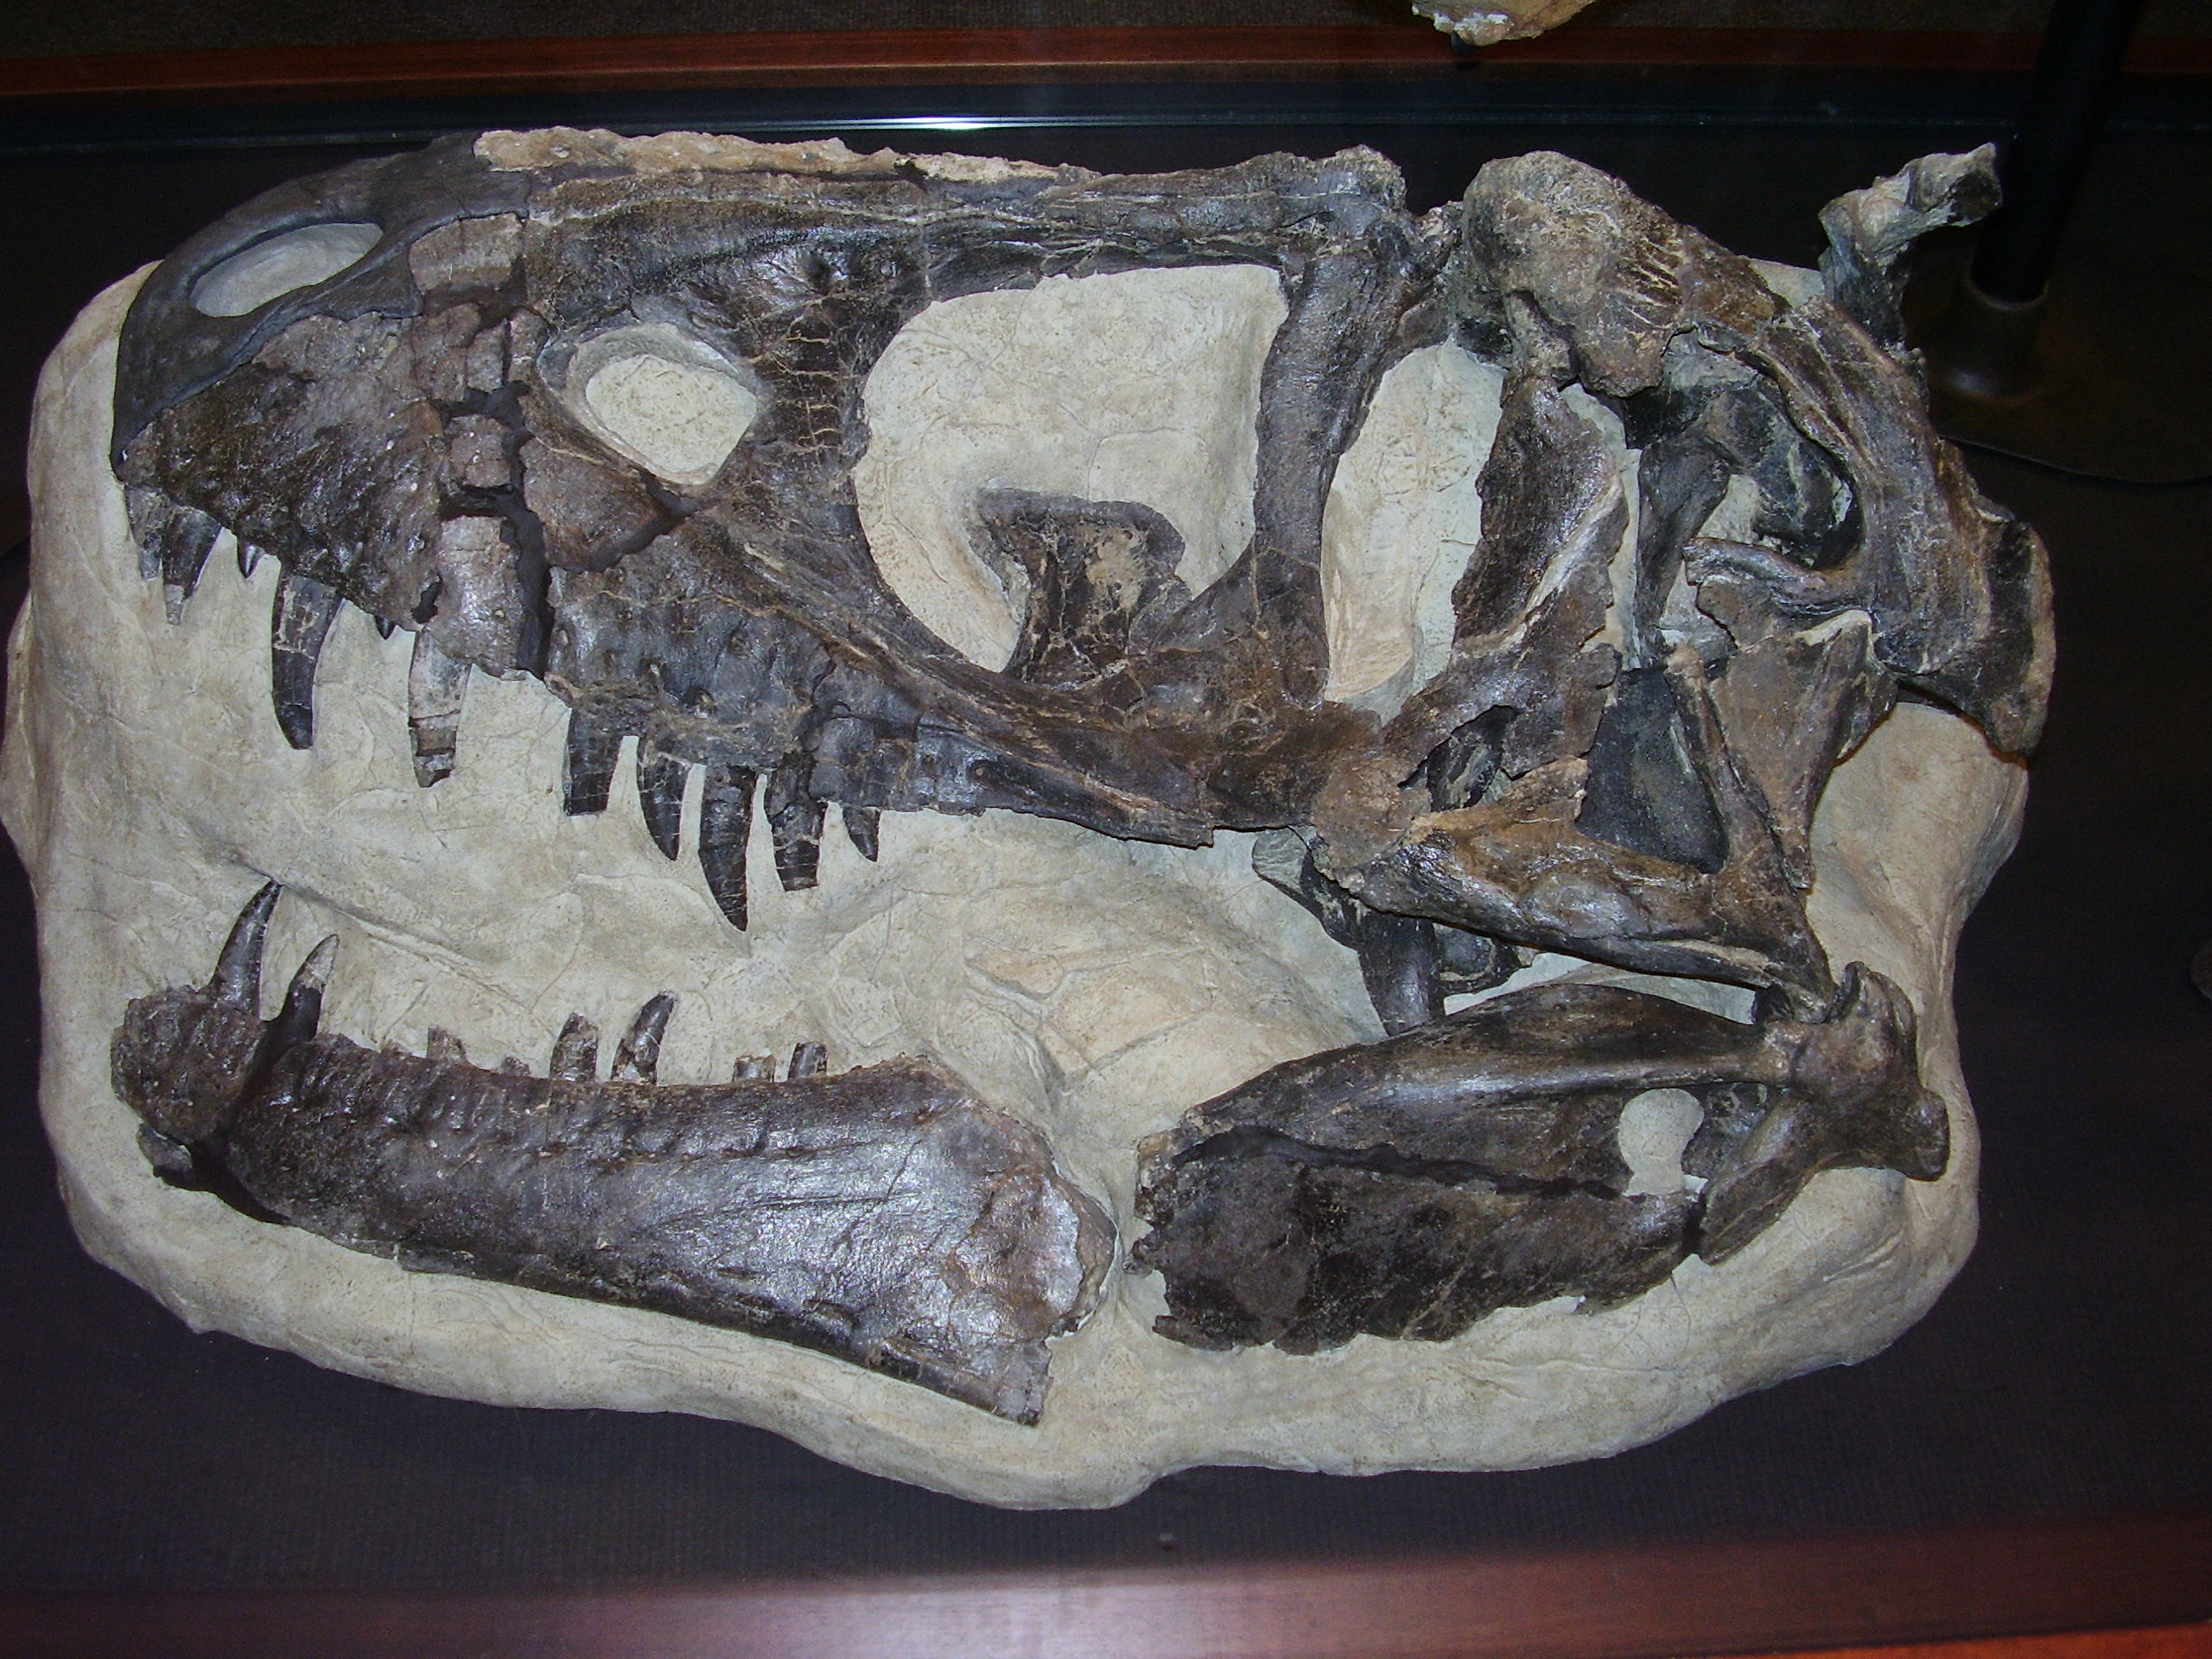 Téměř kompletní lebka holotypu D. horneri (MOR 590) v expozici Museum of the Rockies v Bozemanu (Montana). Teprve v letošním roce byl tento exemplář (spolu s několika dalšími) popsán jako nový samostatný druh rodu Daspletosaurus. Před 75 miliony let 